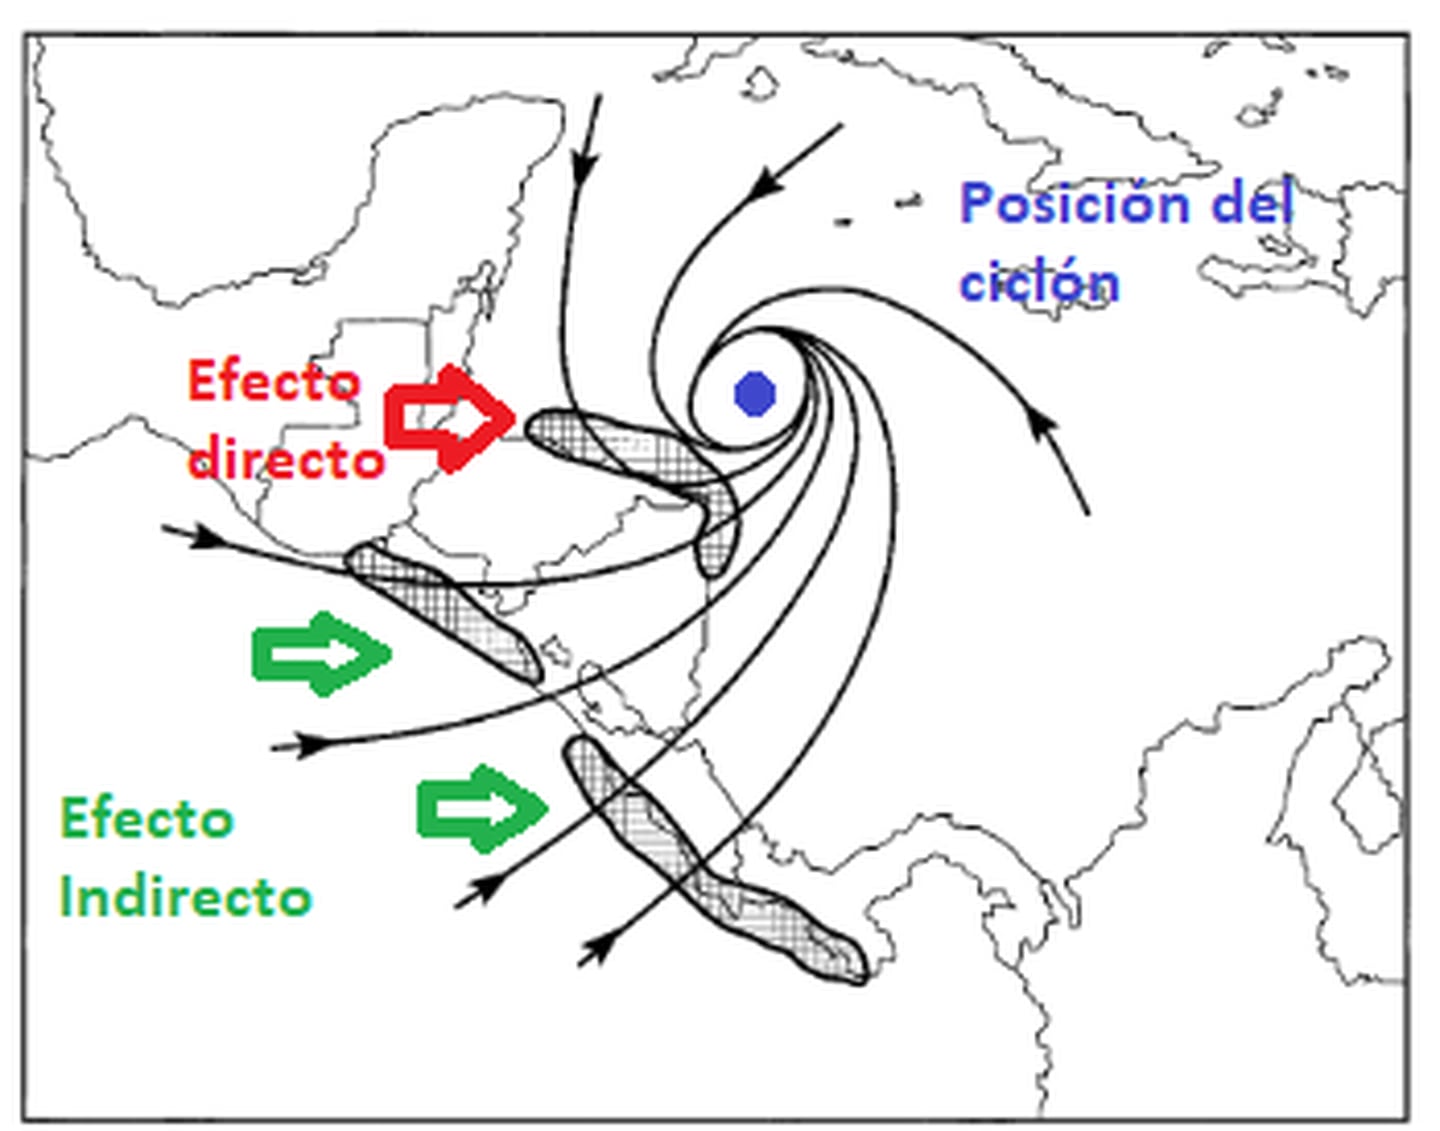 A diferencia del huracán Otto, el eje del actual ciclón va a golpear más al norte y por eso se espera un menor impacto en nuestro territorio. Imagen; IMN/Peña,M. y Douglas, M.